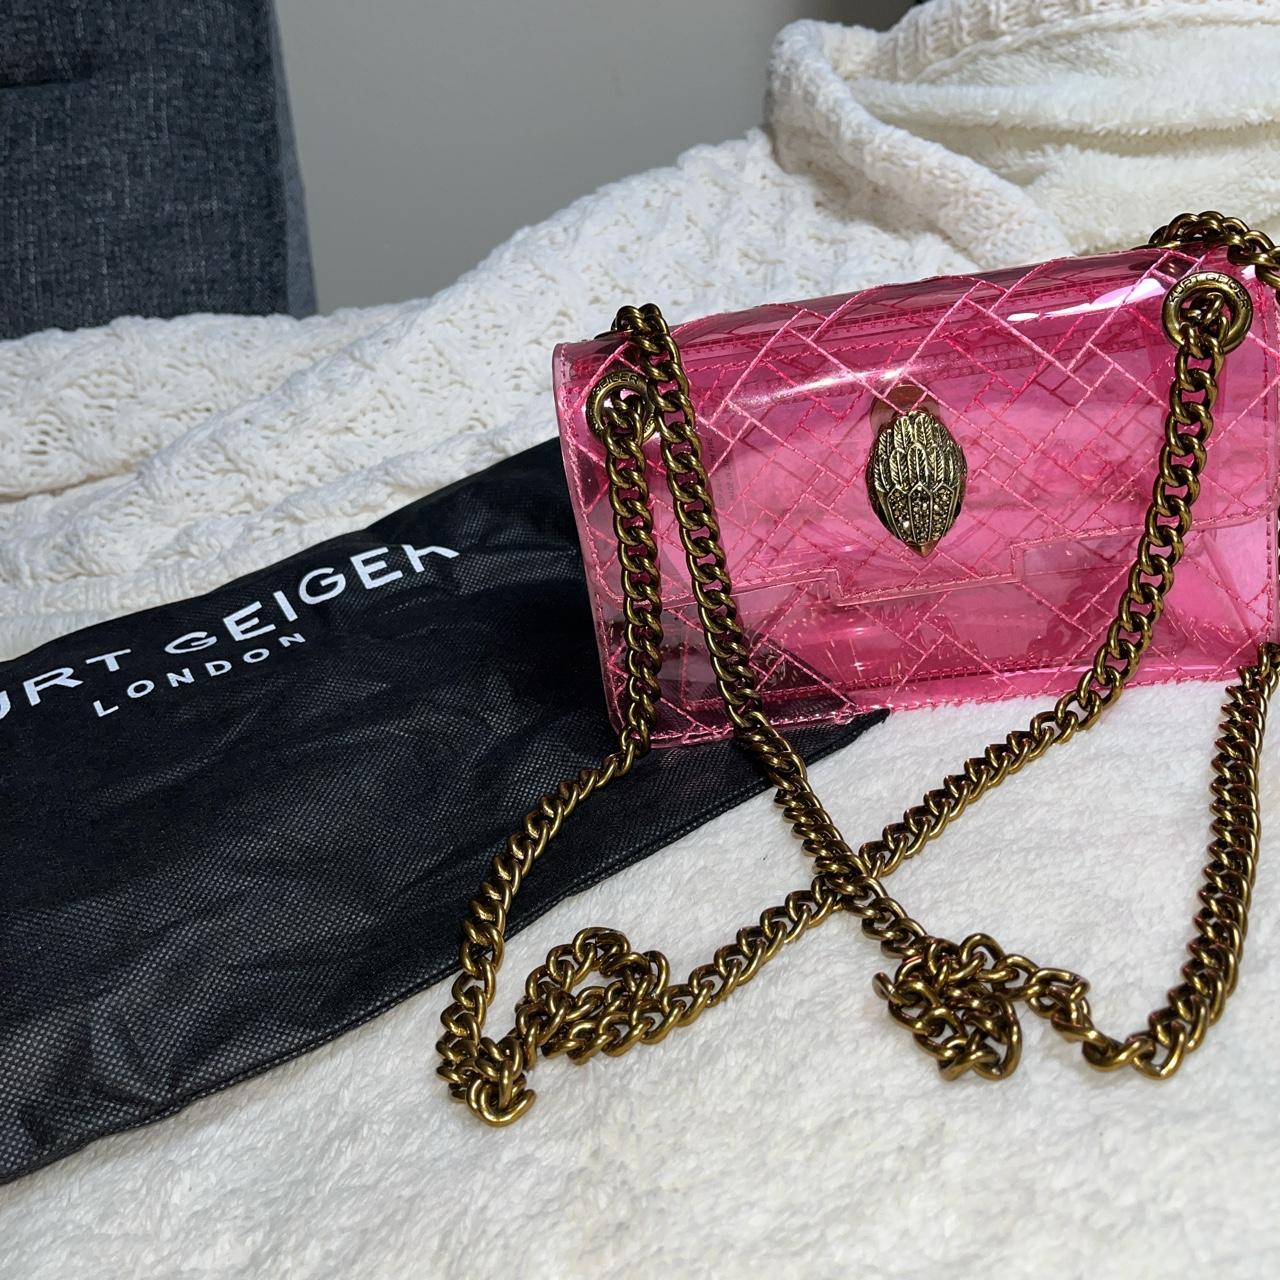 Kurt Geiger Women's Gold and Pink Bag